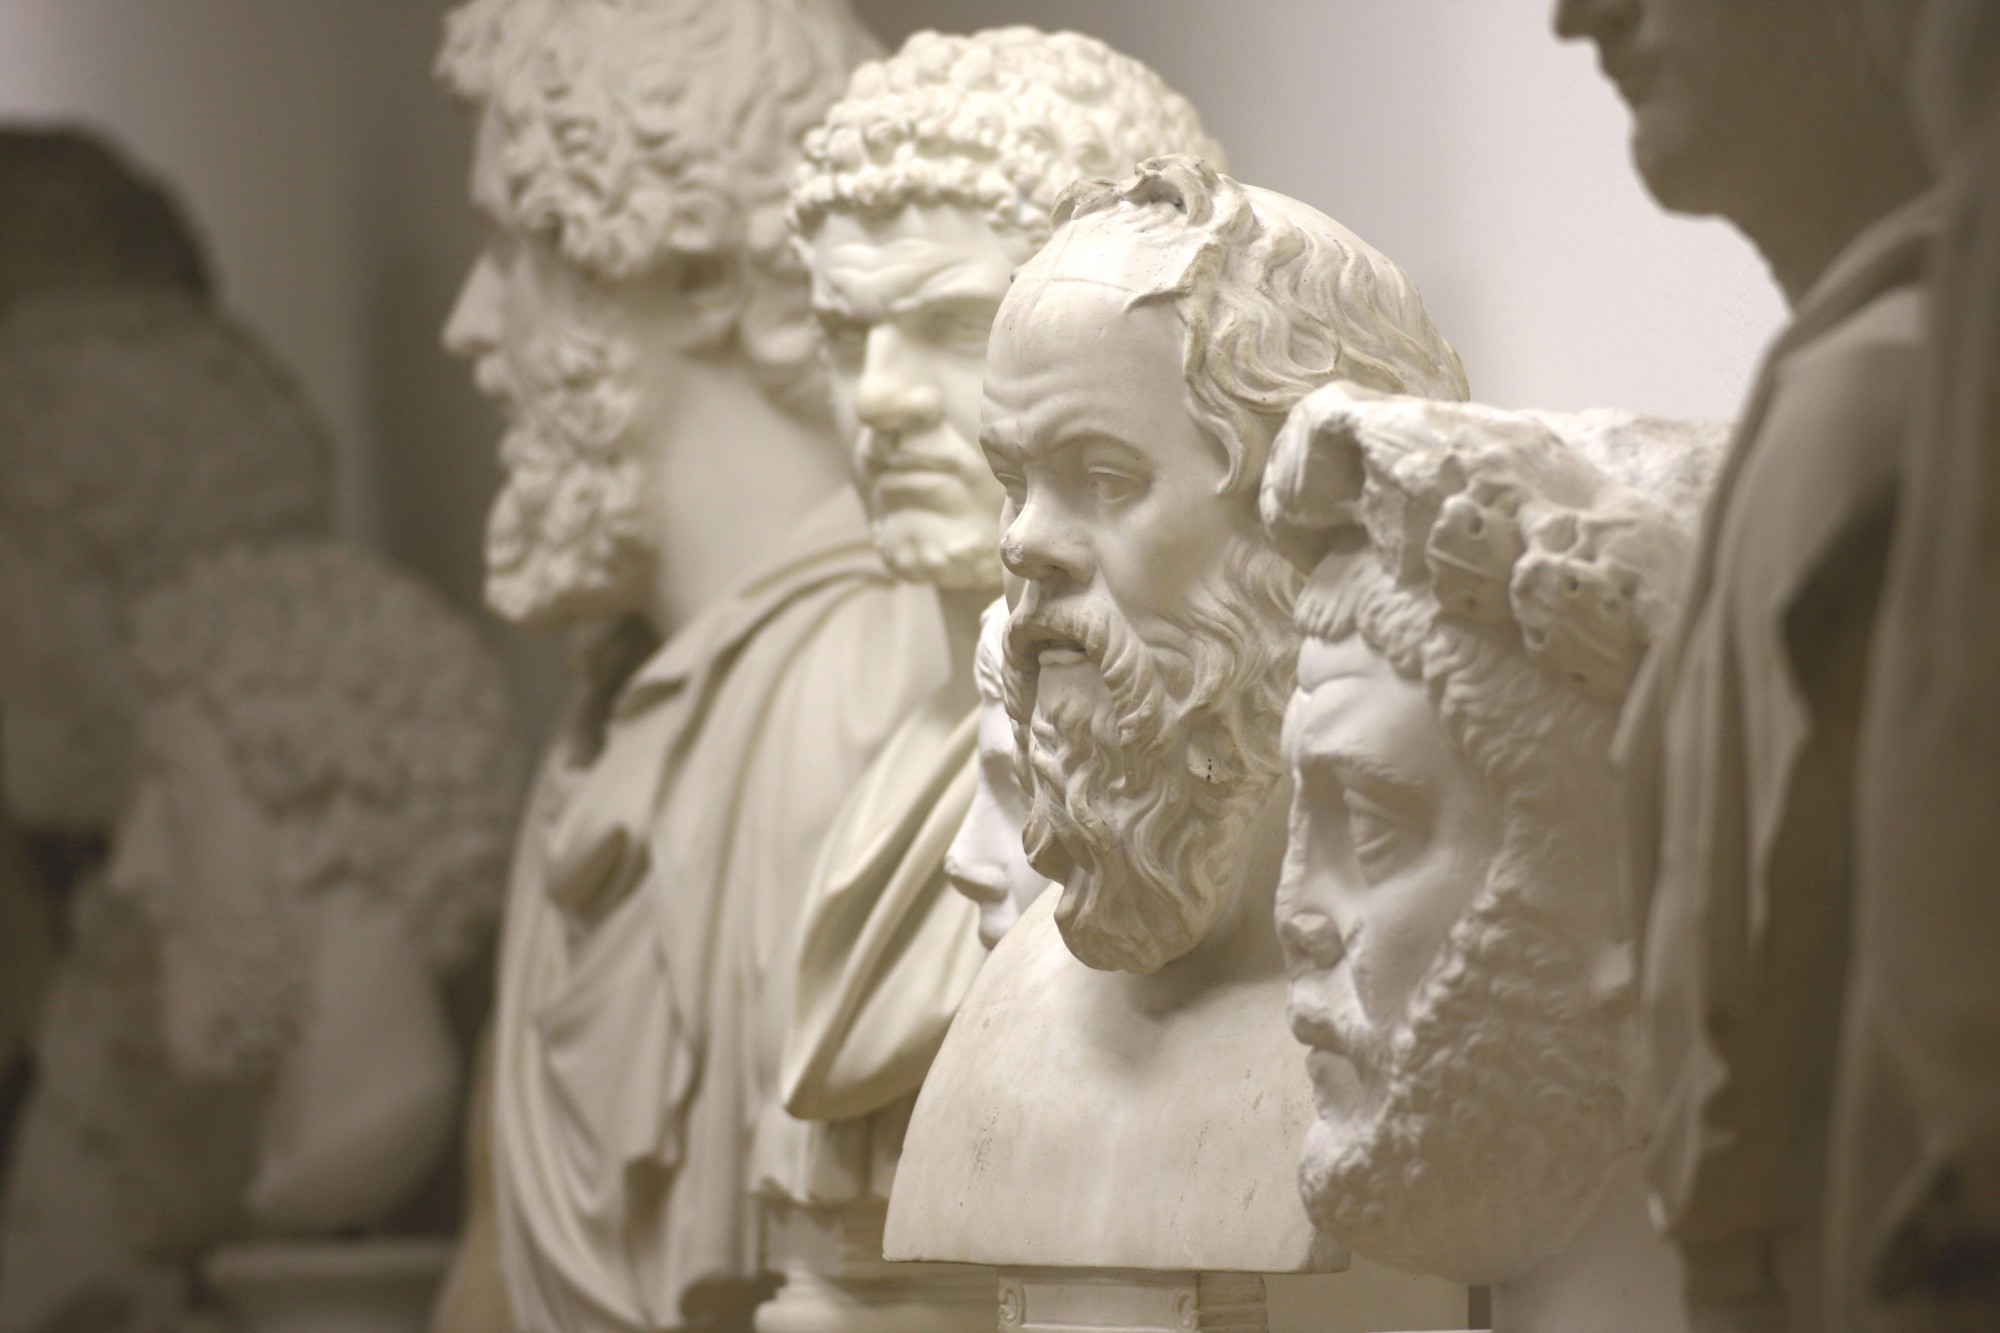 Portraitgalerie in der Gipsgussssammlung mit römischen Kaisern und griechischen Philosophen (Bild: Georg Pöhlein)